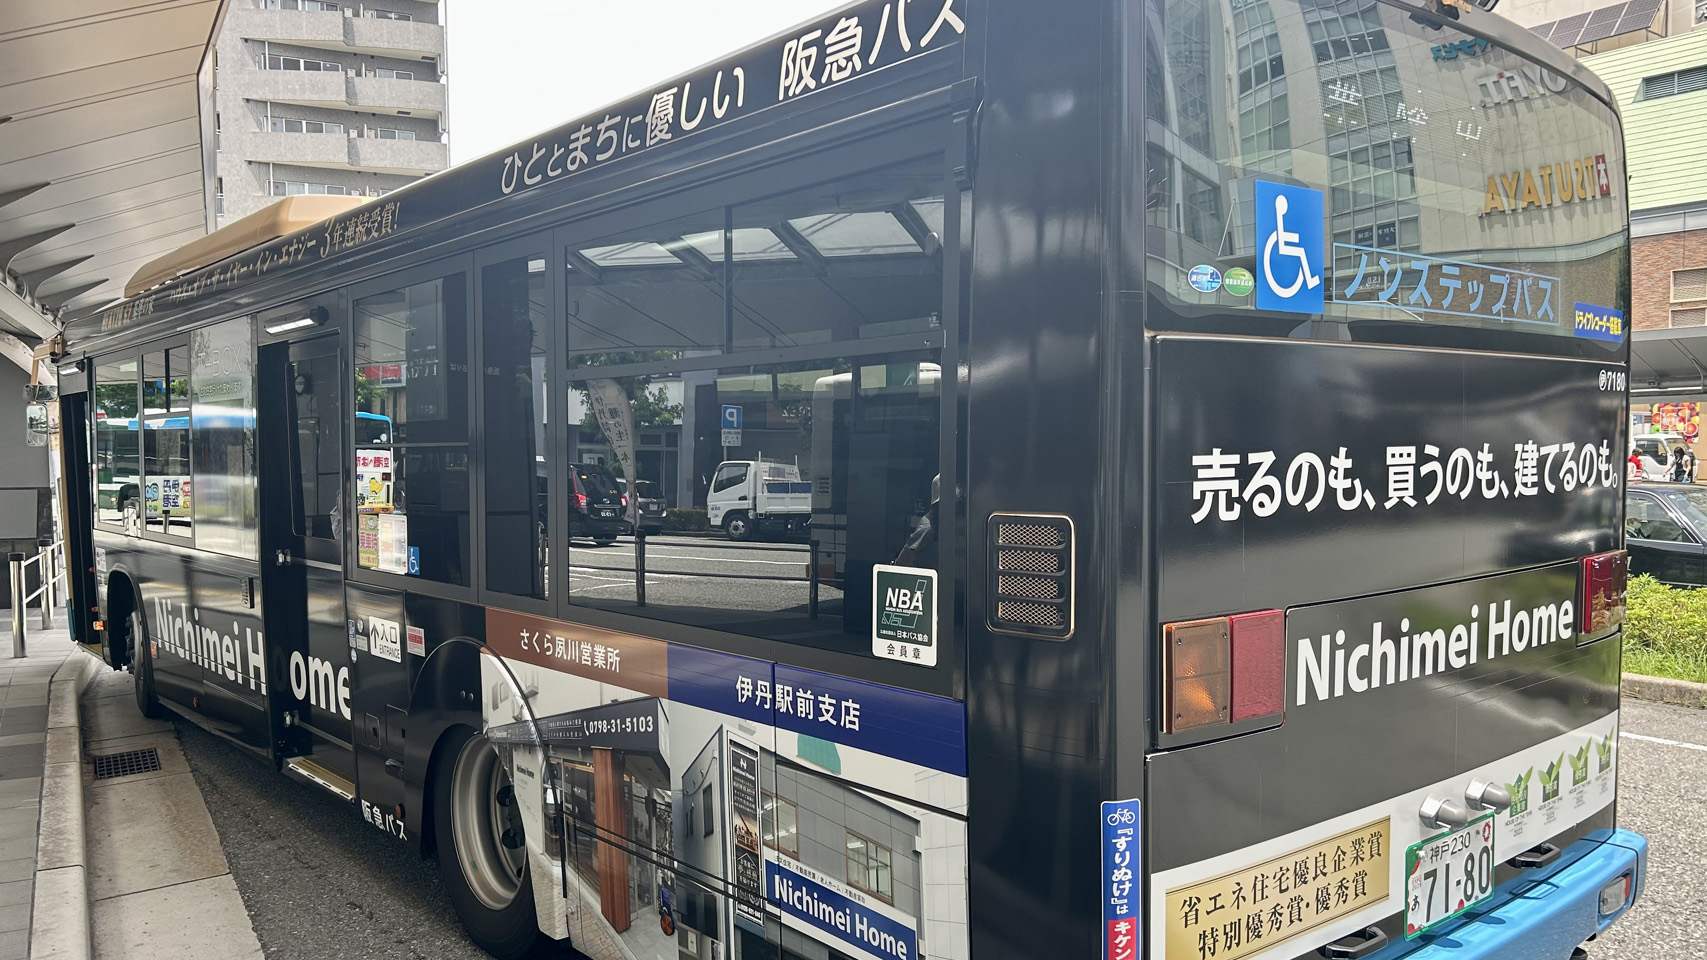 阪急伊丹バス広告